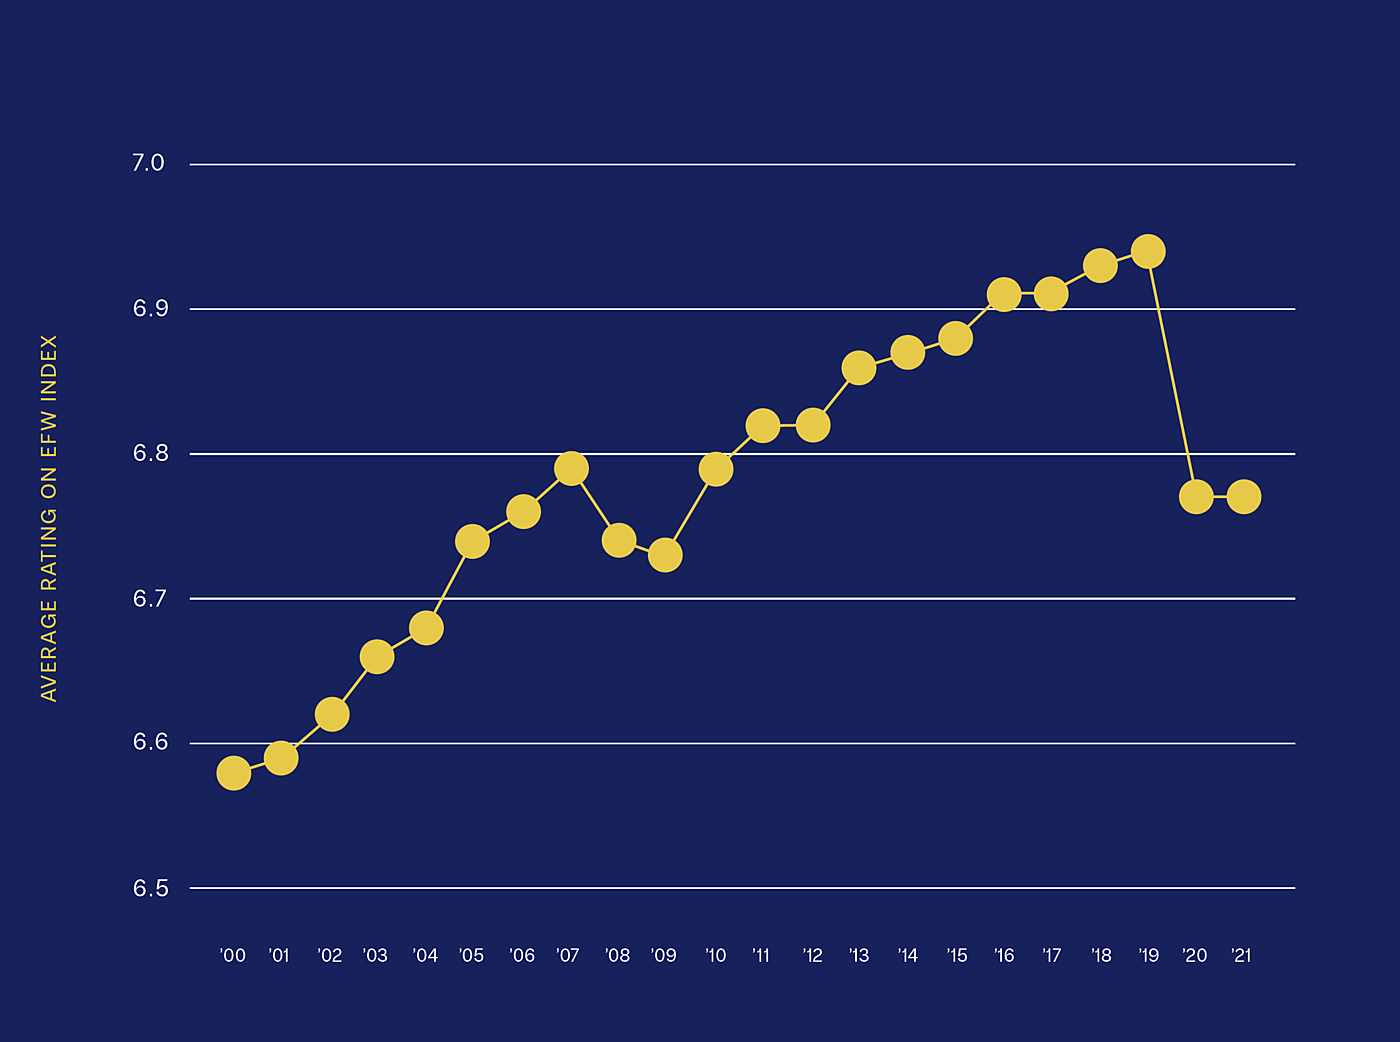 Global Average Economic Freedom Rating, 2000-2021